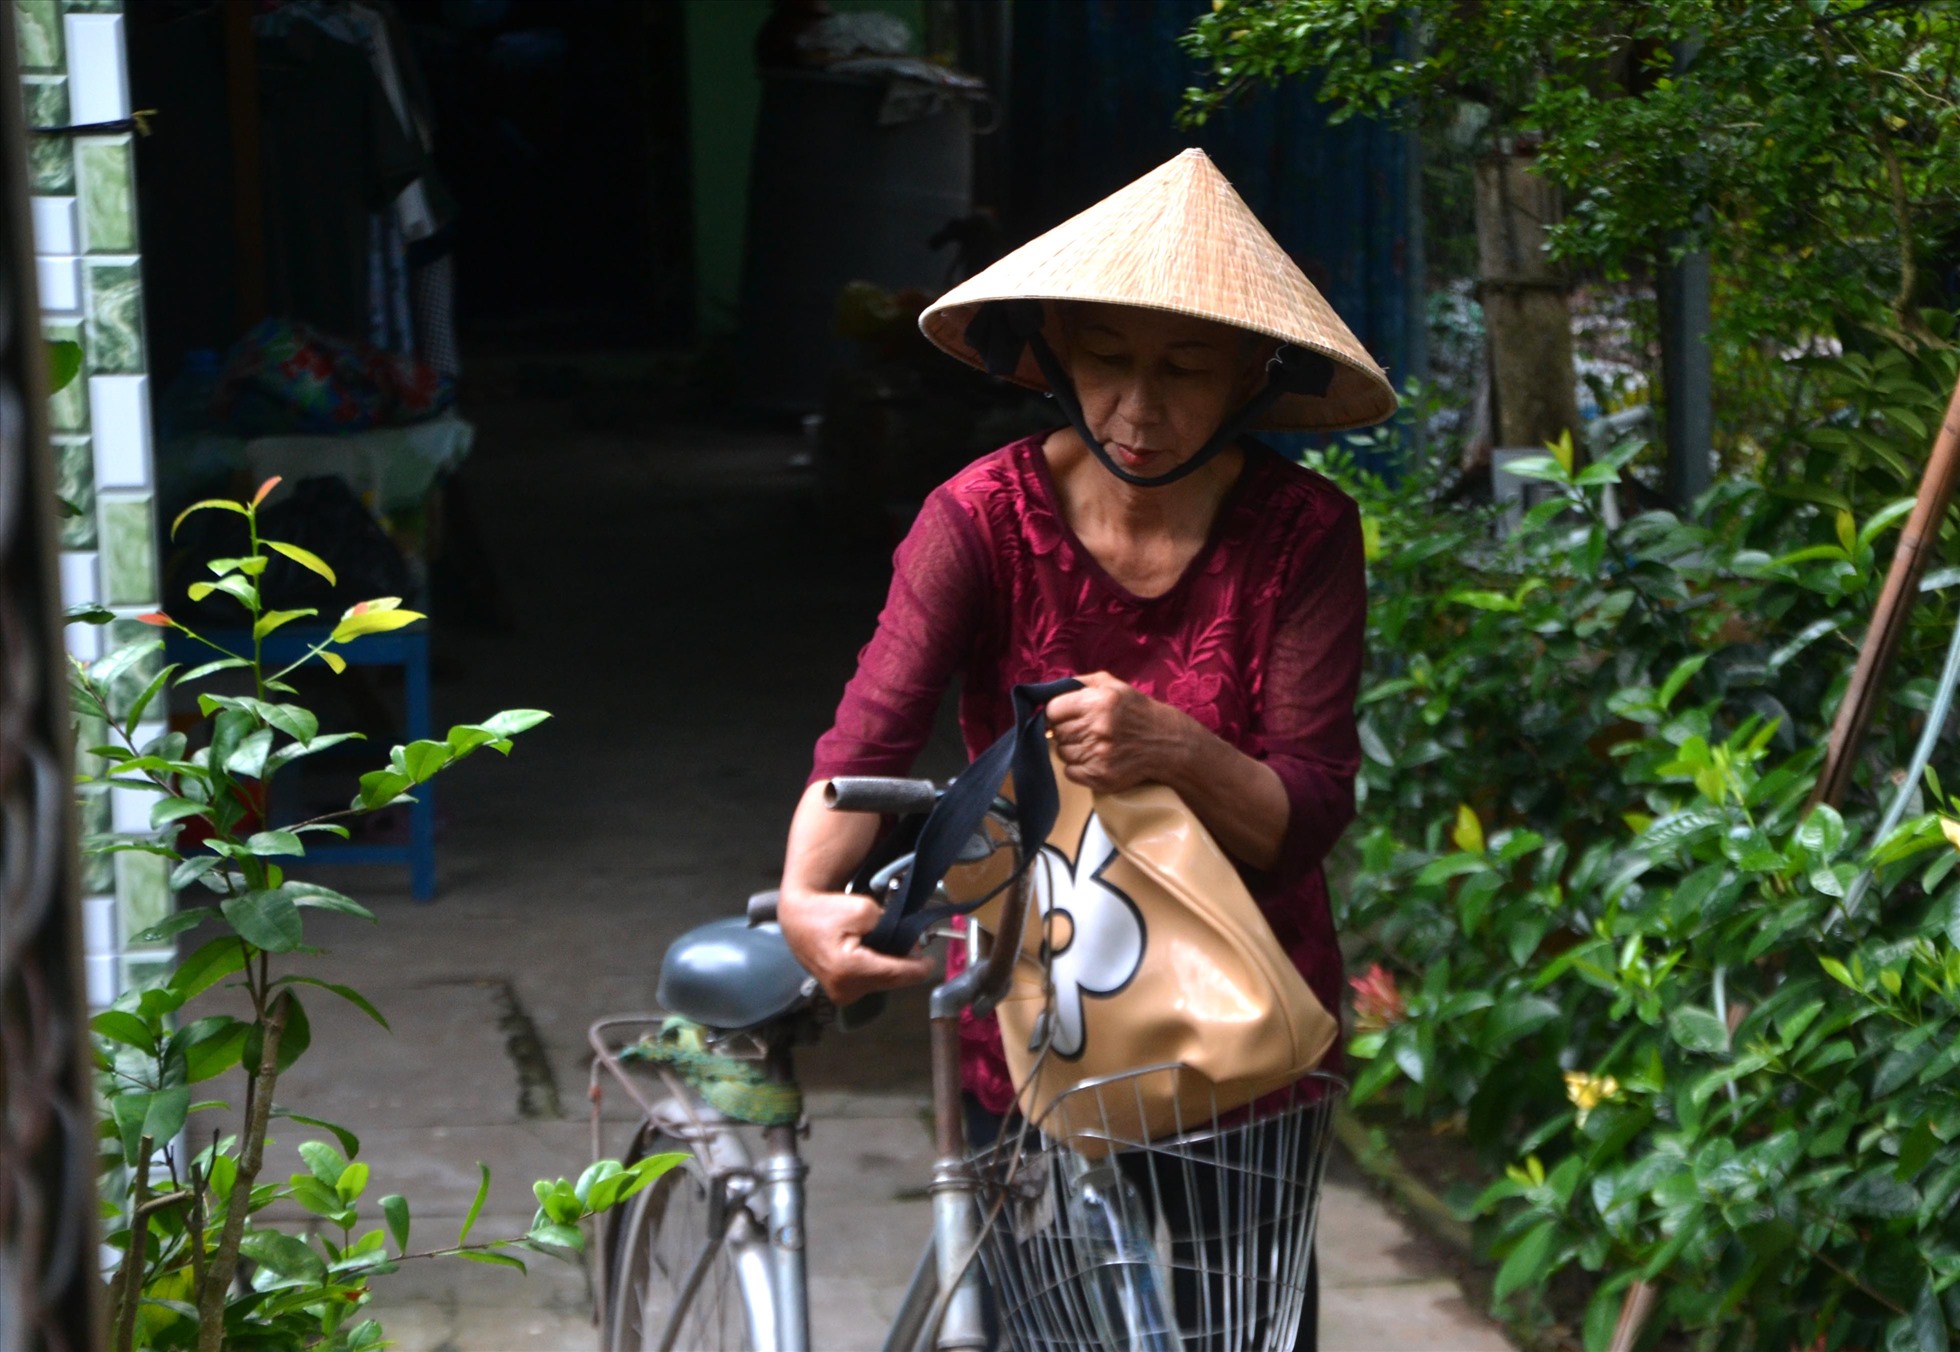 Cuộc sống của bà Thu khá đơn giản. Bà đến trường với xe đạp, nón lá.